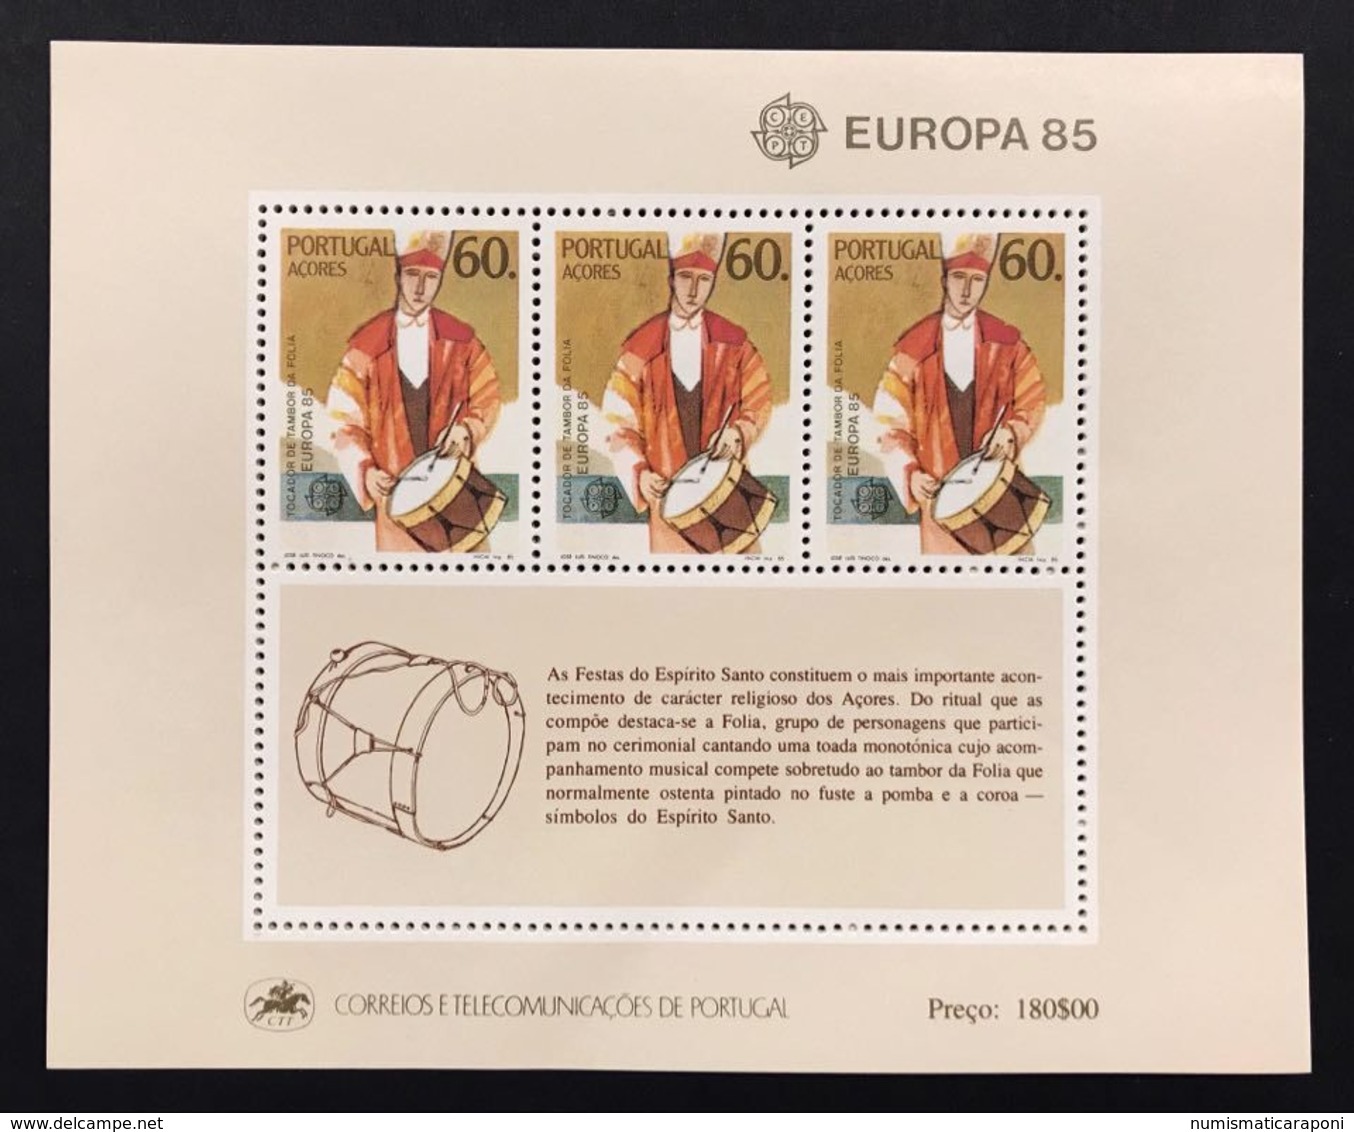 PORTOGALLO AZZORRE ACORES  FOGLIETTO EUROPA CEPT 1985 - Local Post Stamps